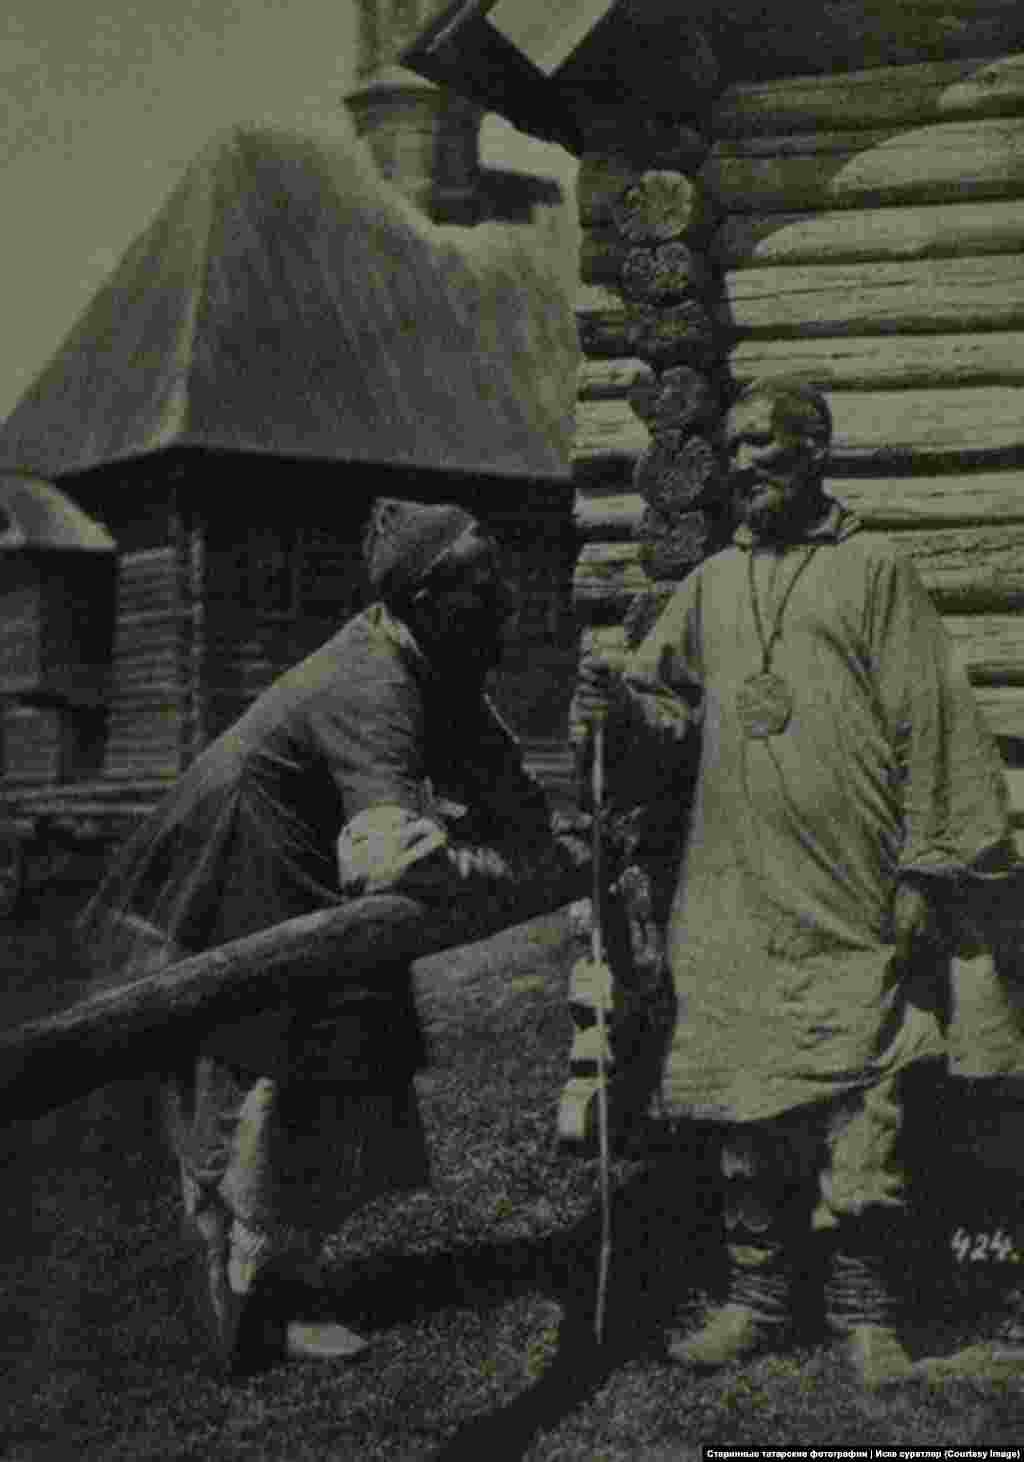 Эта одна из самых старых фотографий в коллекции Наиля &ndash; татары Симбирской губернии в 1870 году